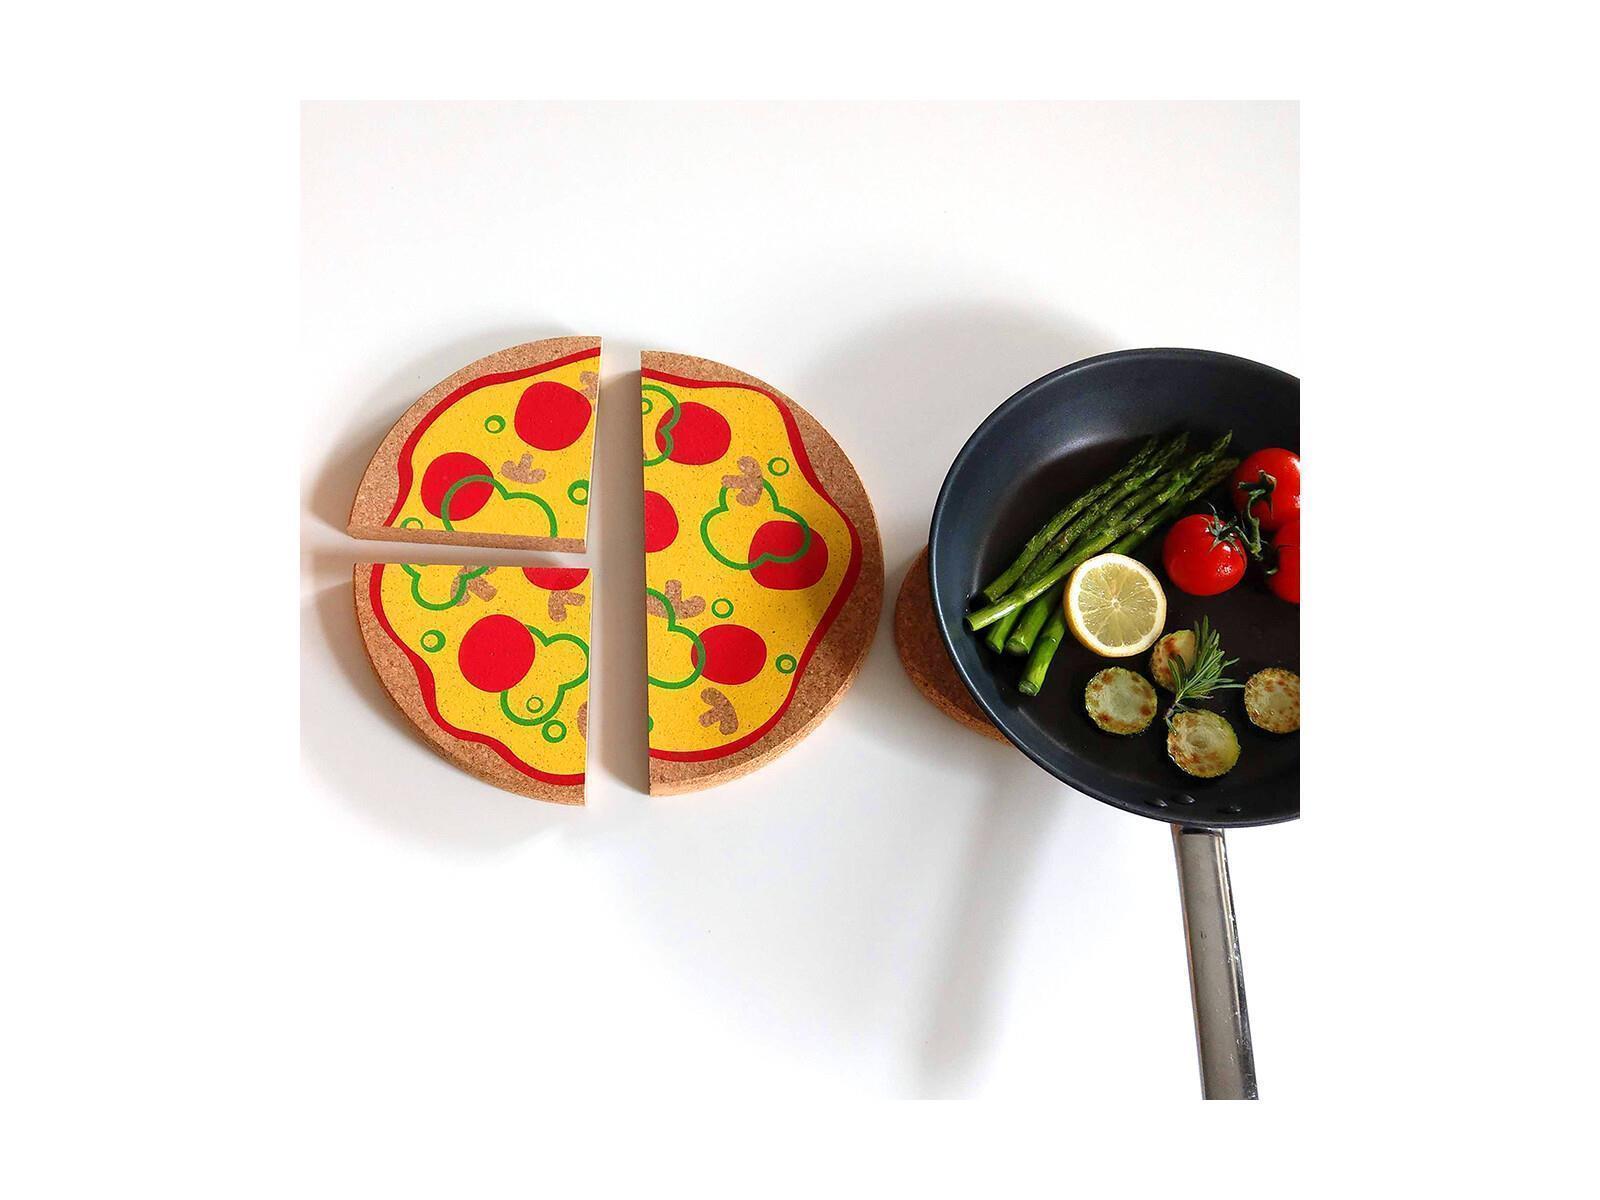 Topfuntersetzer, Pizza, 3er Set, aus Kork, 29 cm